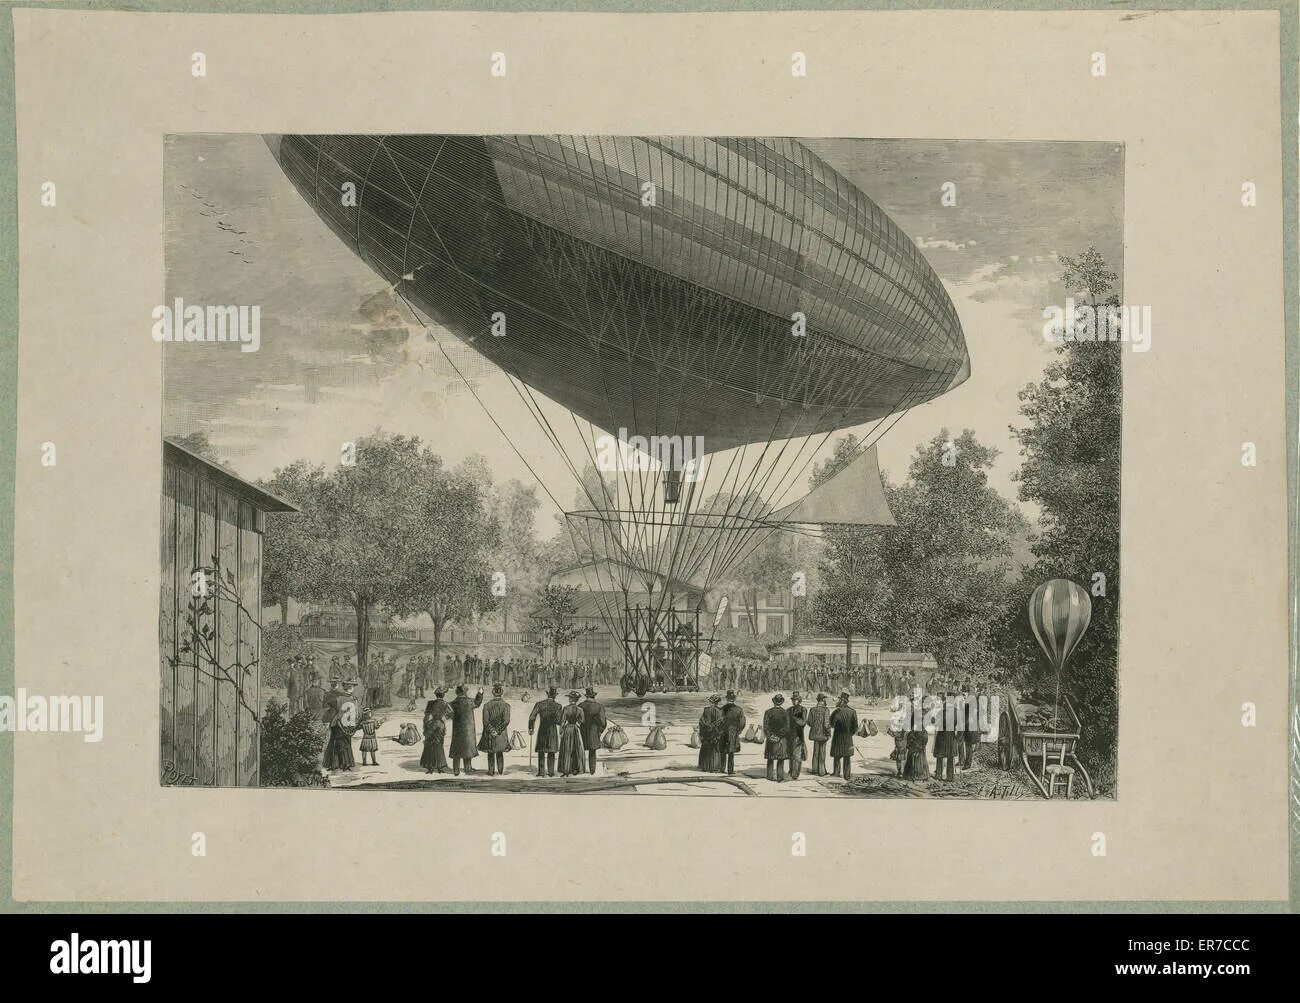 Первый воздушный шарик. Дирижабль 19 века первый. Воздухоплавание 19 века. Воздухоплавание братья Монгольфье. Дирижабль Тиссандье.